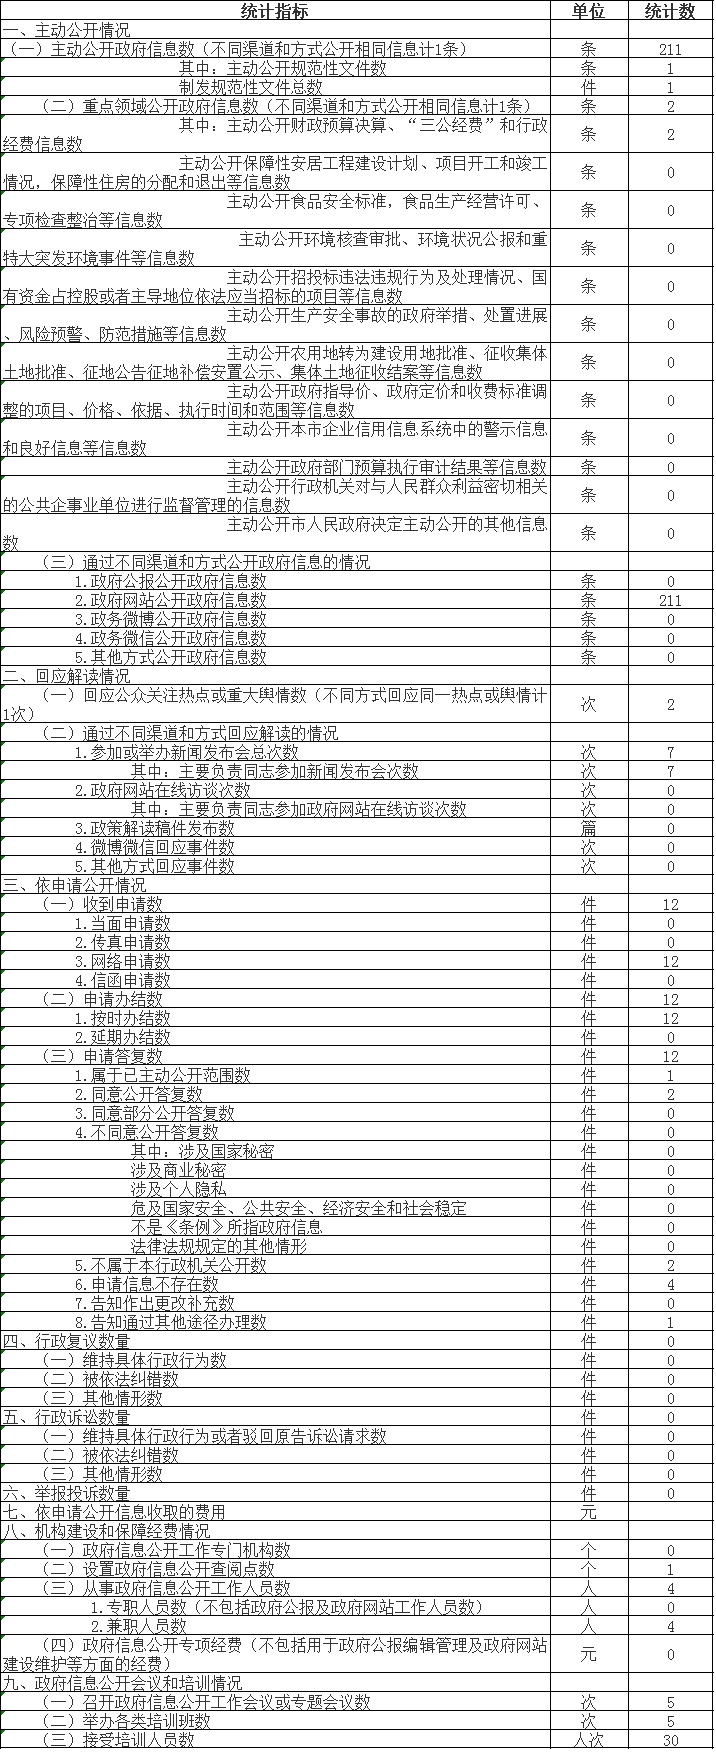 北京市中医管理局政府信息公开情况统计表